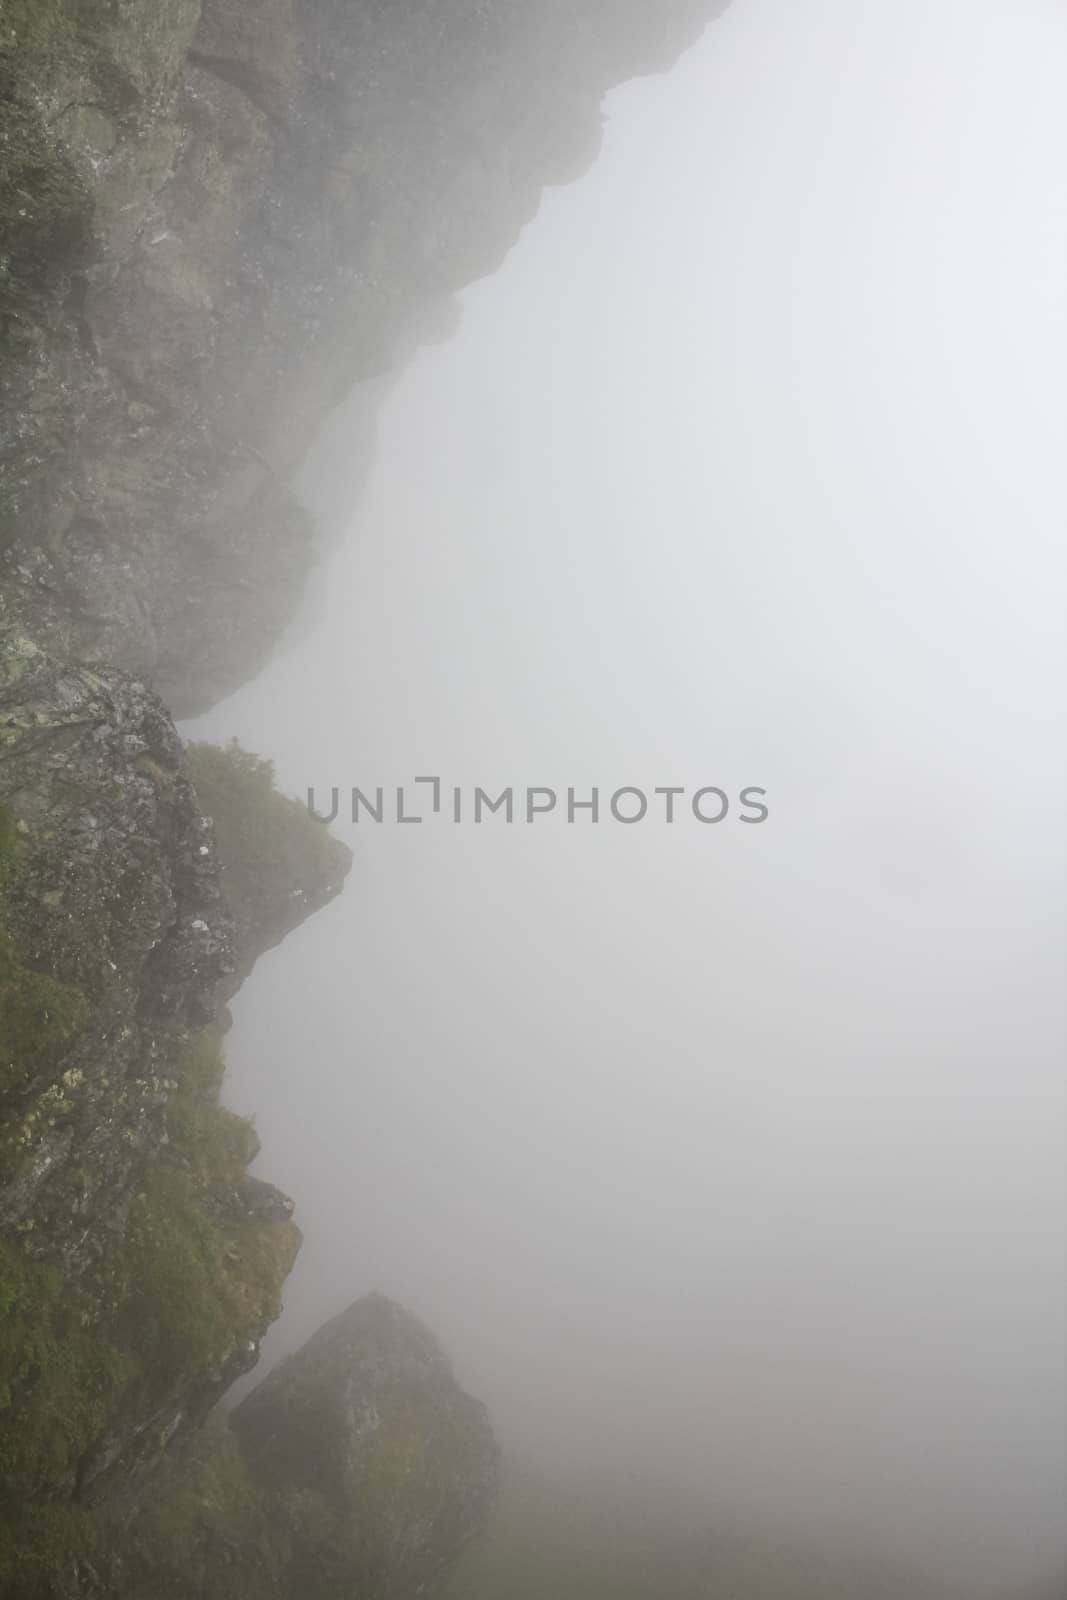 Fog, clouds, rocks and cliffs on Veslehødn Veslehorn mountain in Hemsedal, Norway.